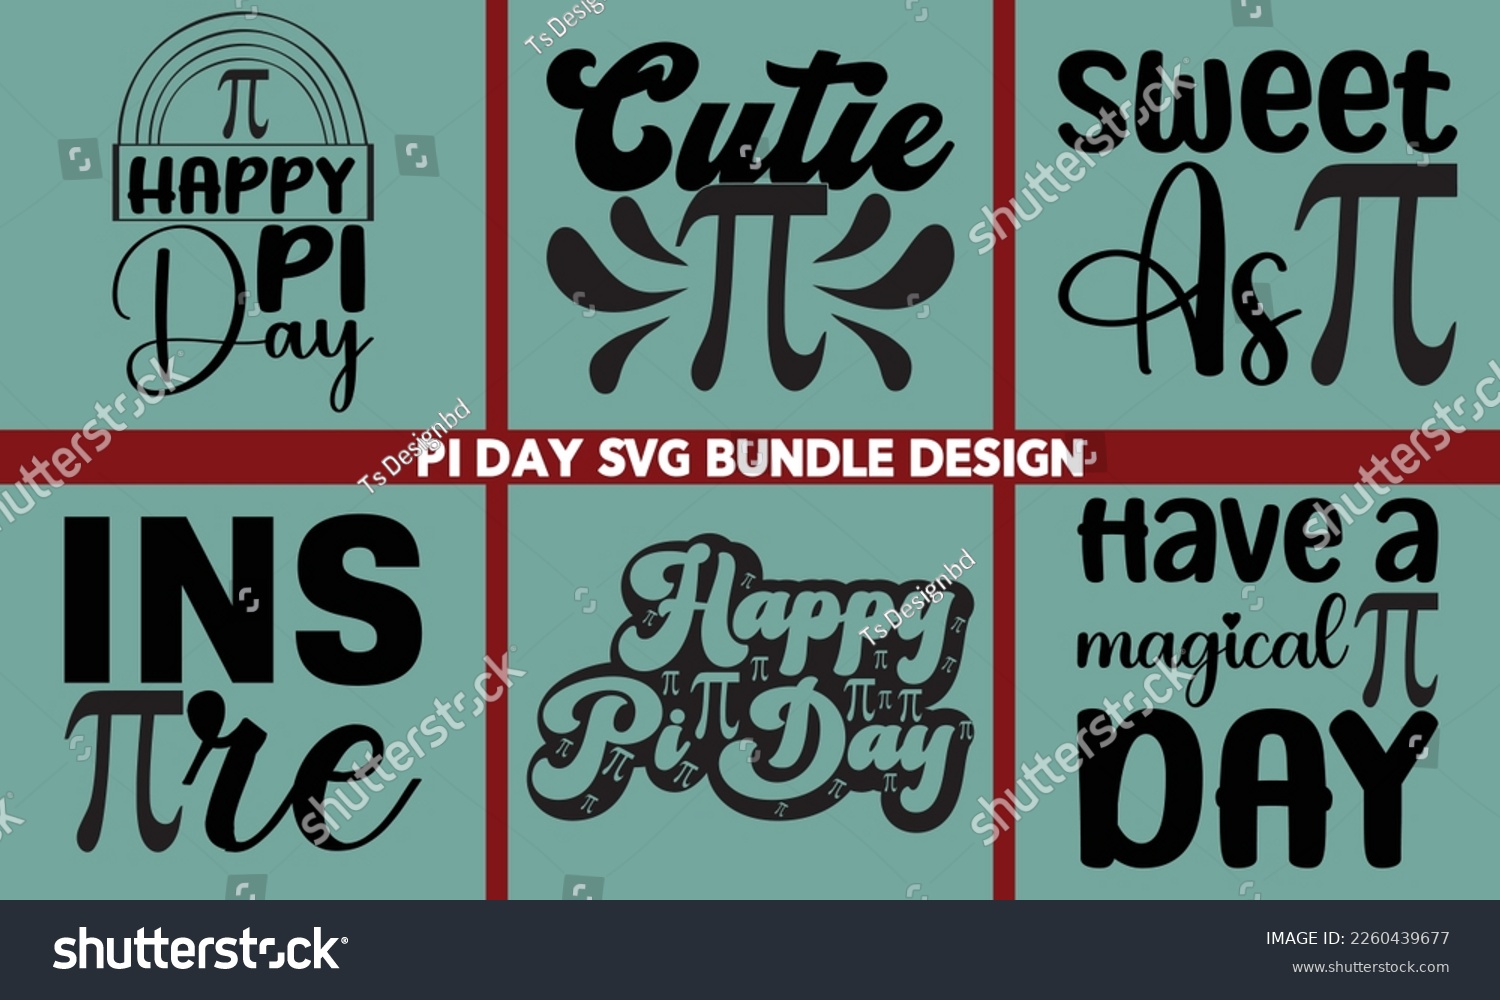 SVG of Pi Day svg design Bundle,Happy Pi Day SVG Bundle, svg